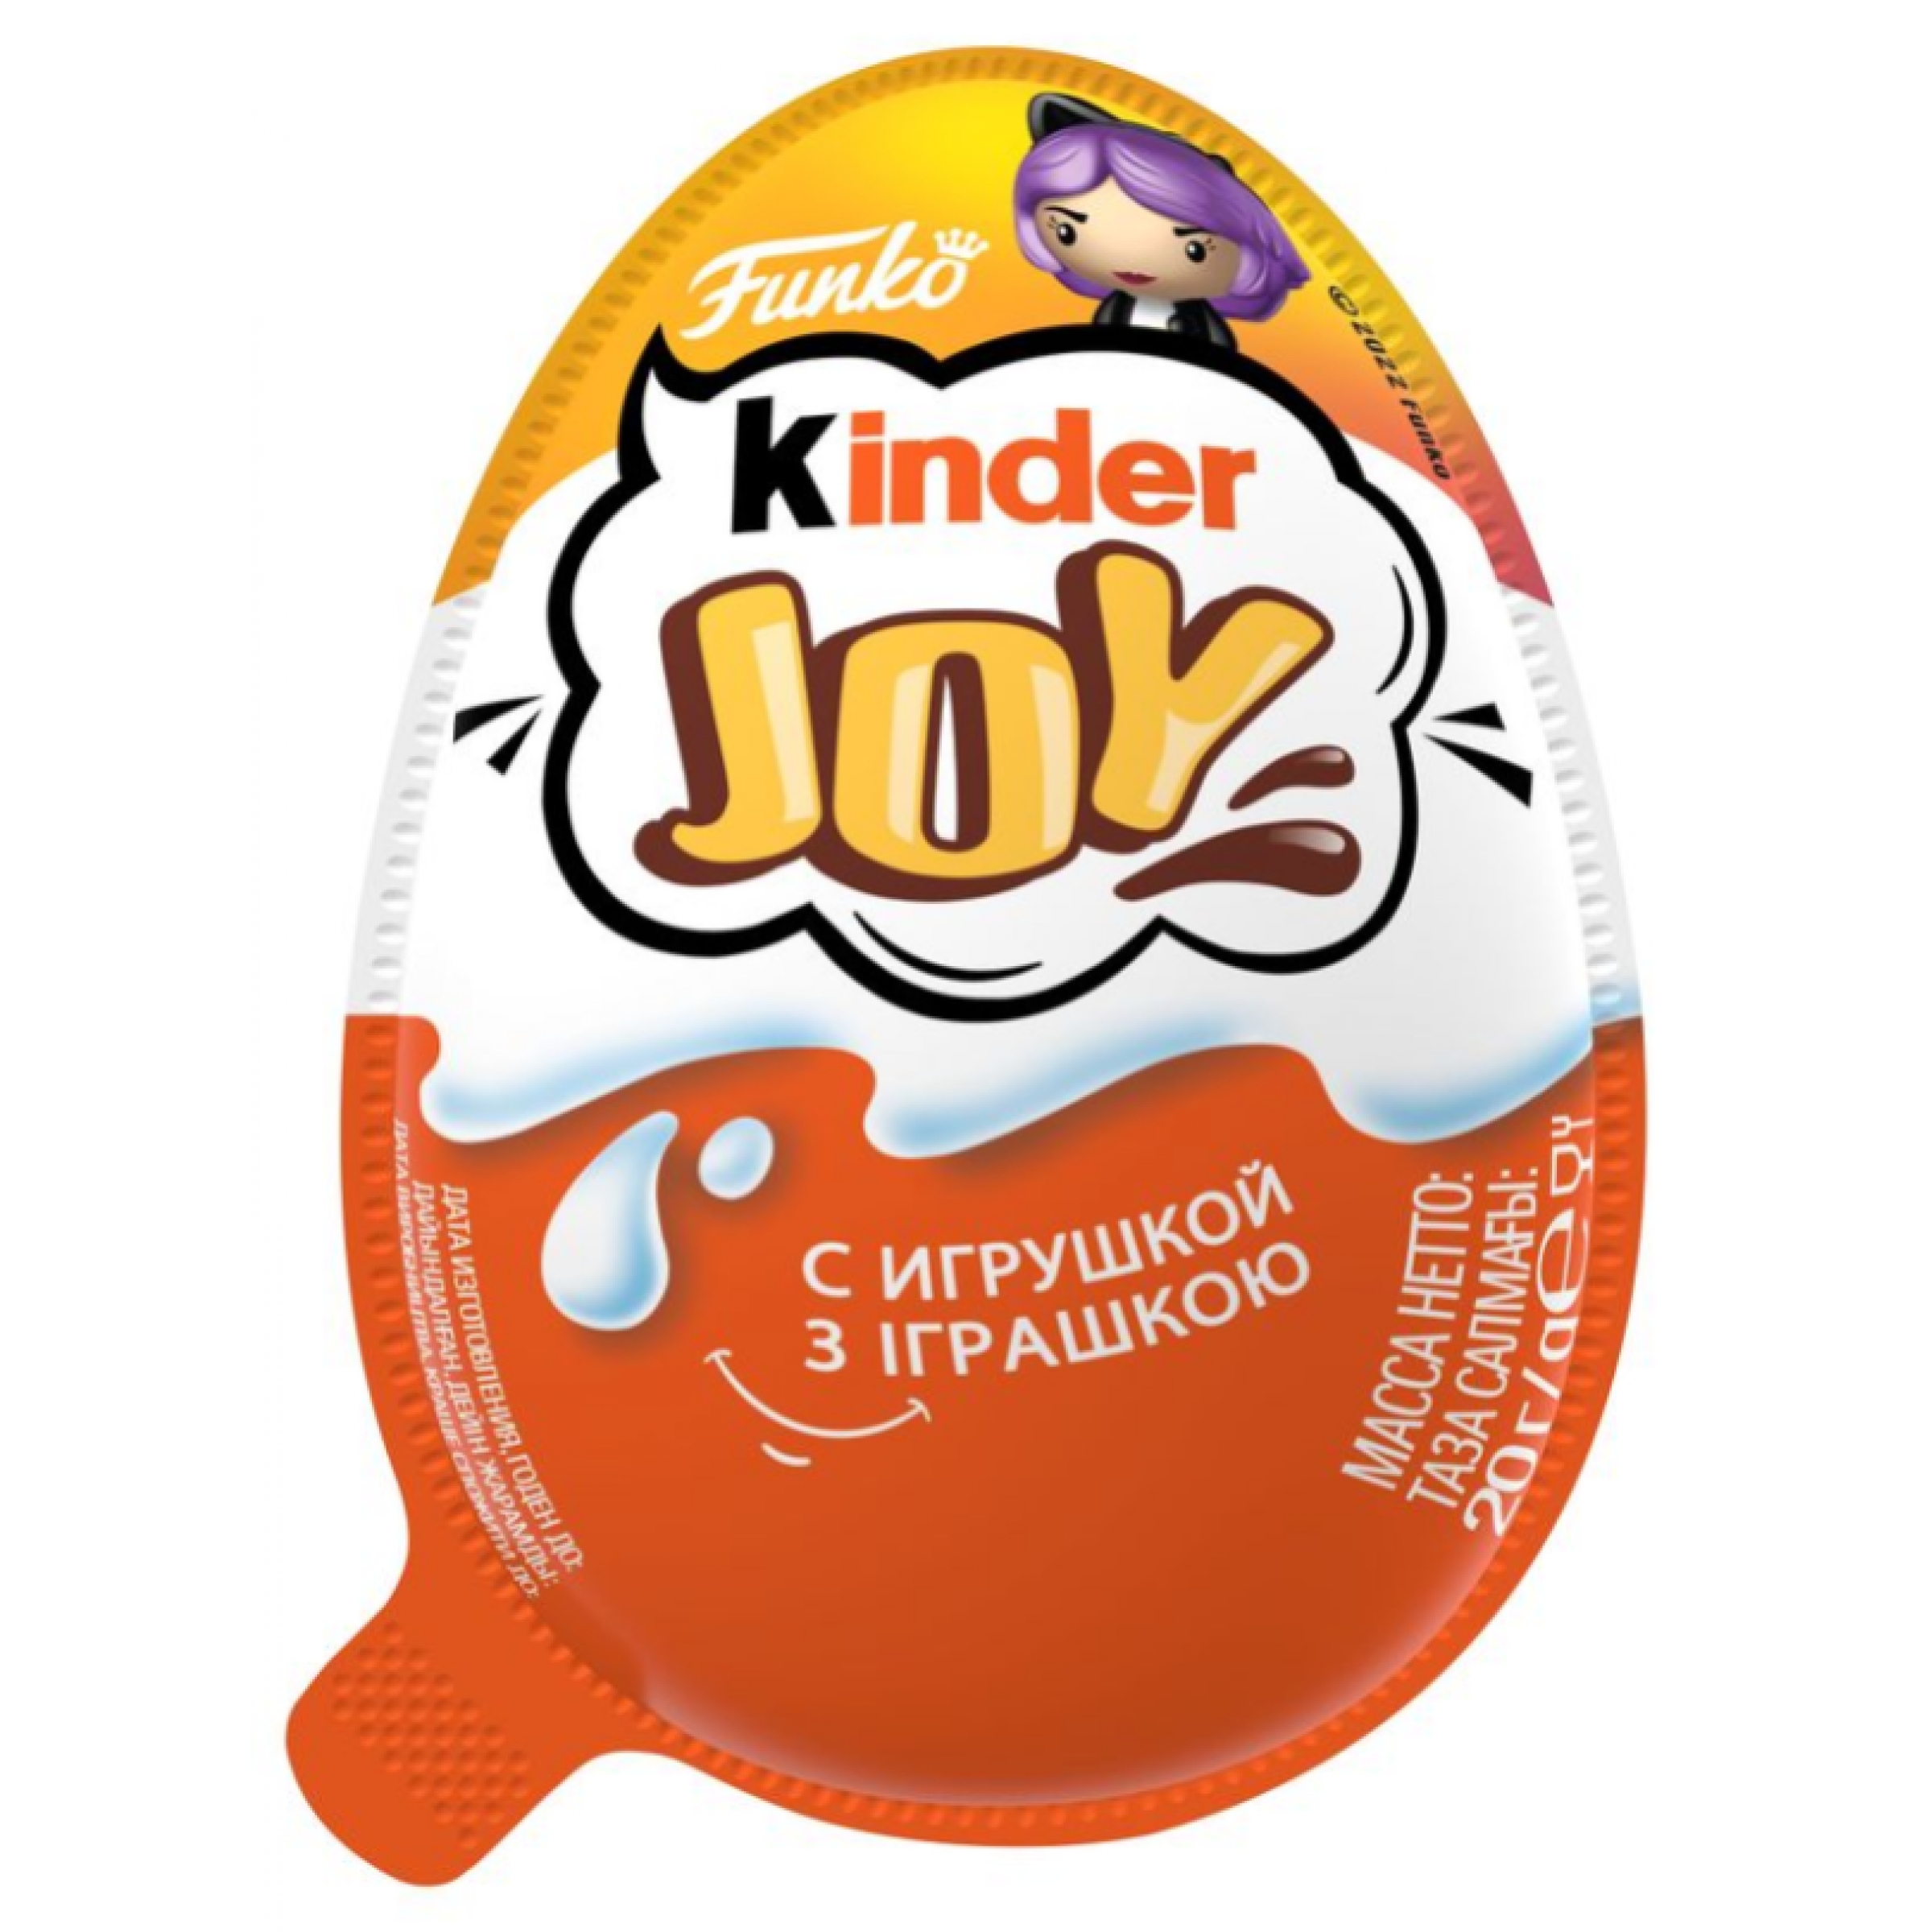 Кондитерское изделие Kinder Joy Funky для девочек, 12 шт по 20 г